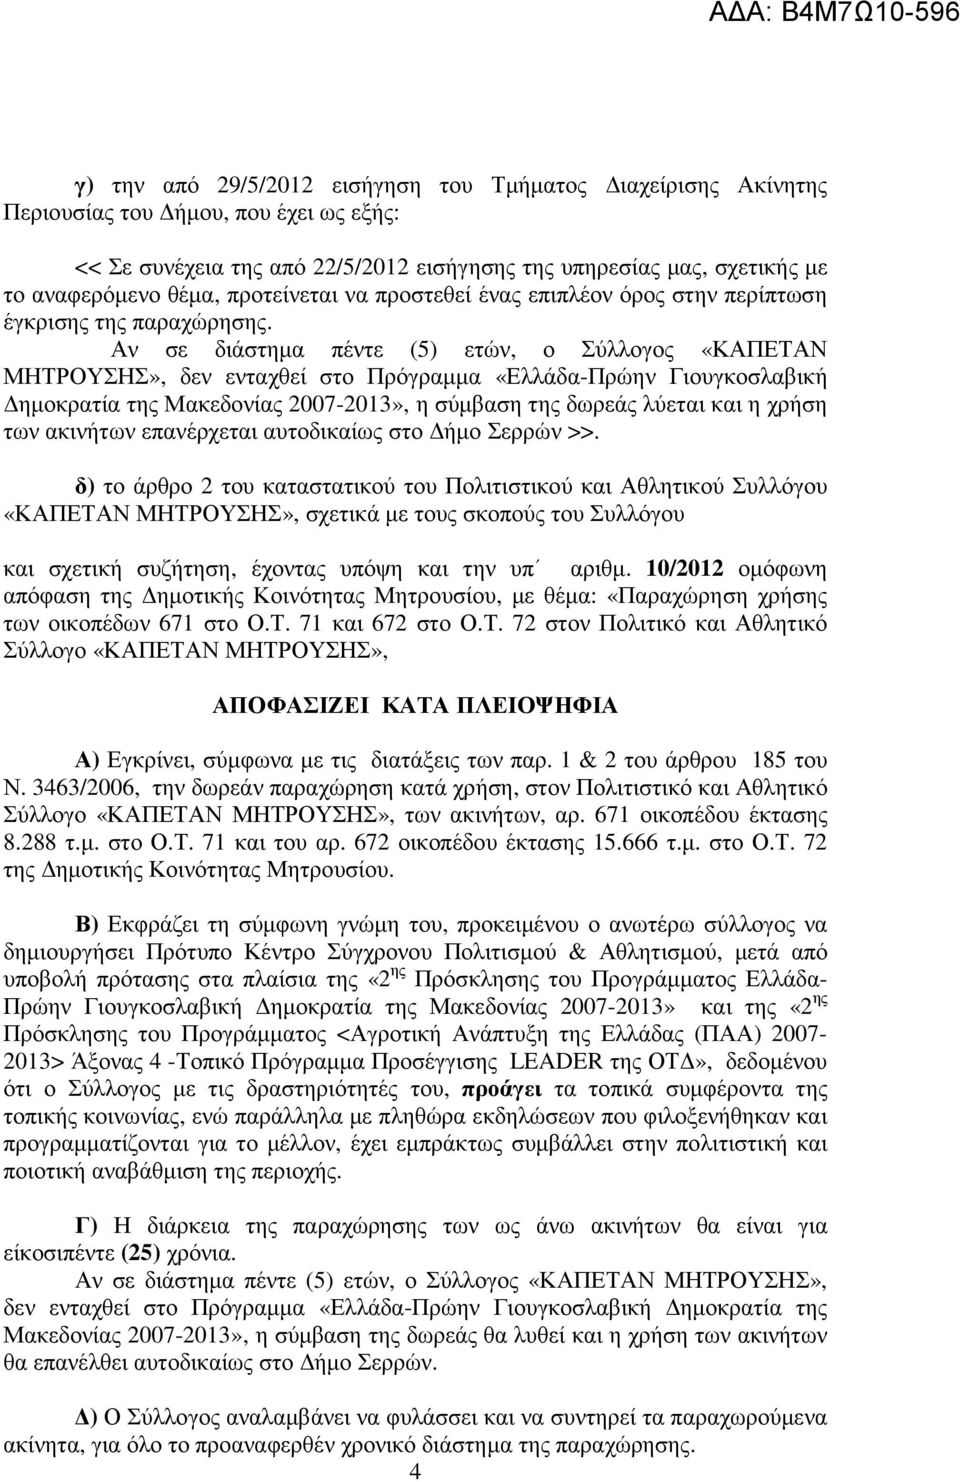 Αν σε διάστηµα πέντε (5) ετών, ο Σύλλογος «ΚΑΠΕΤΑΝ ΜΗΤΡΟΥΣΗΣ», δεν ενταχθεί στο Πρόγραµµα «Ελλάδα-Πρώην Γιουγκοσλαβική ηµοκρατία της Μακεδονίας 2007-2013», η σύµβαση της δωρεάς λύεται και η χρήση των